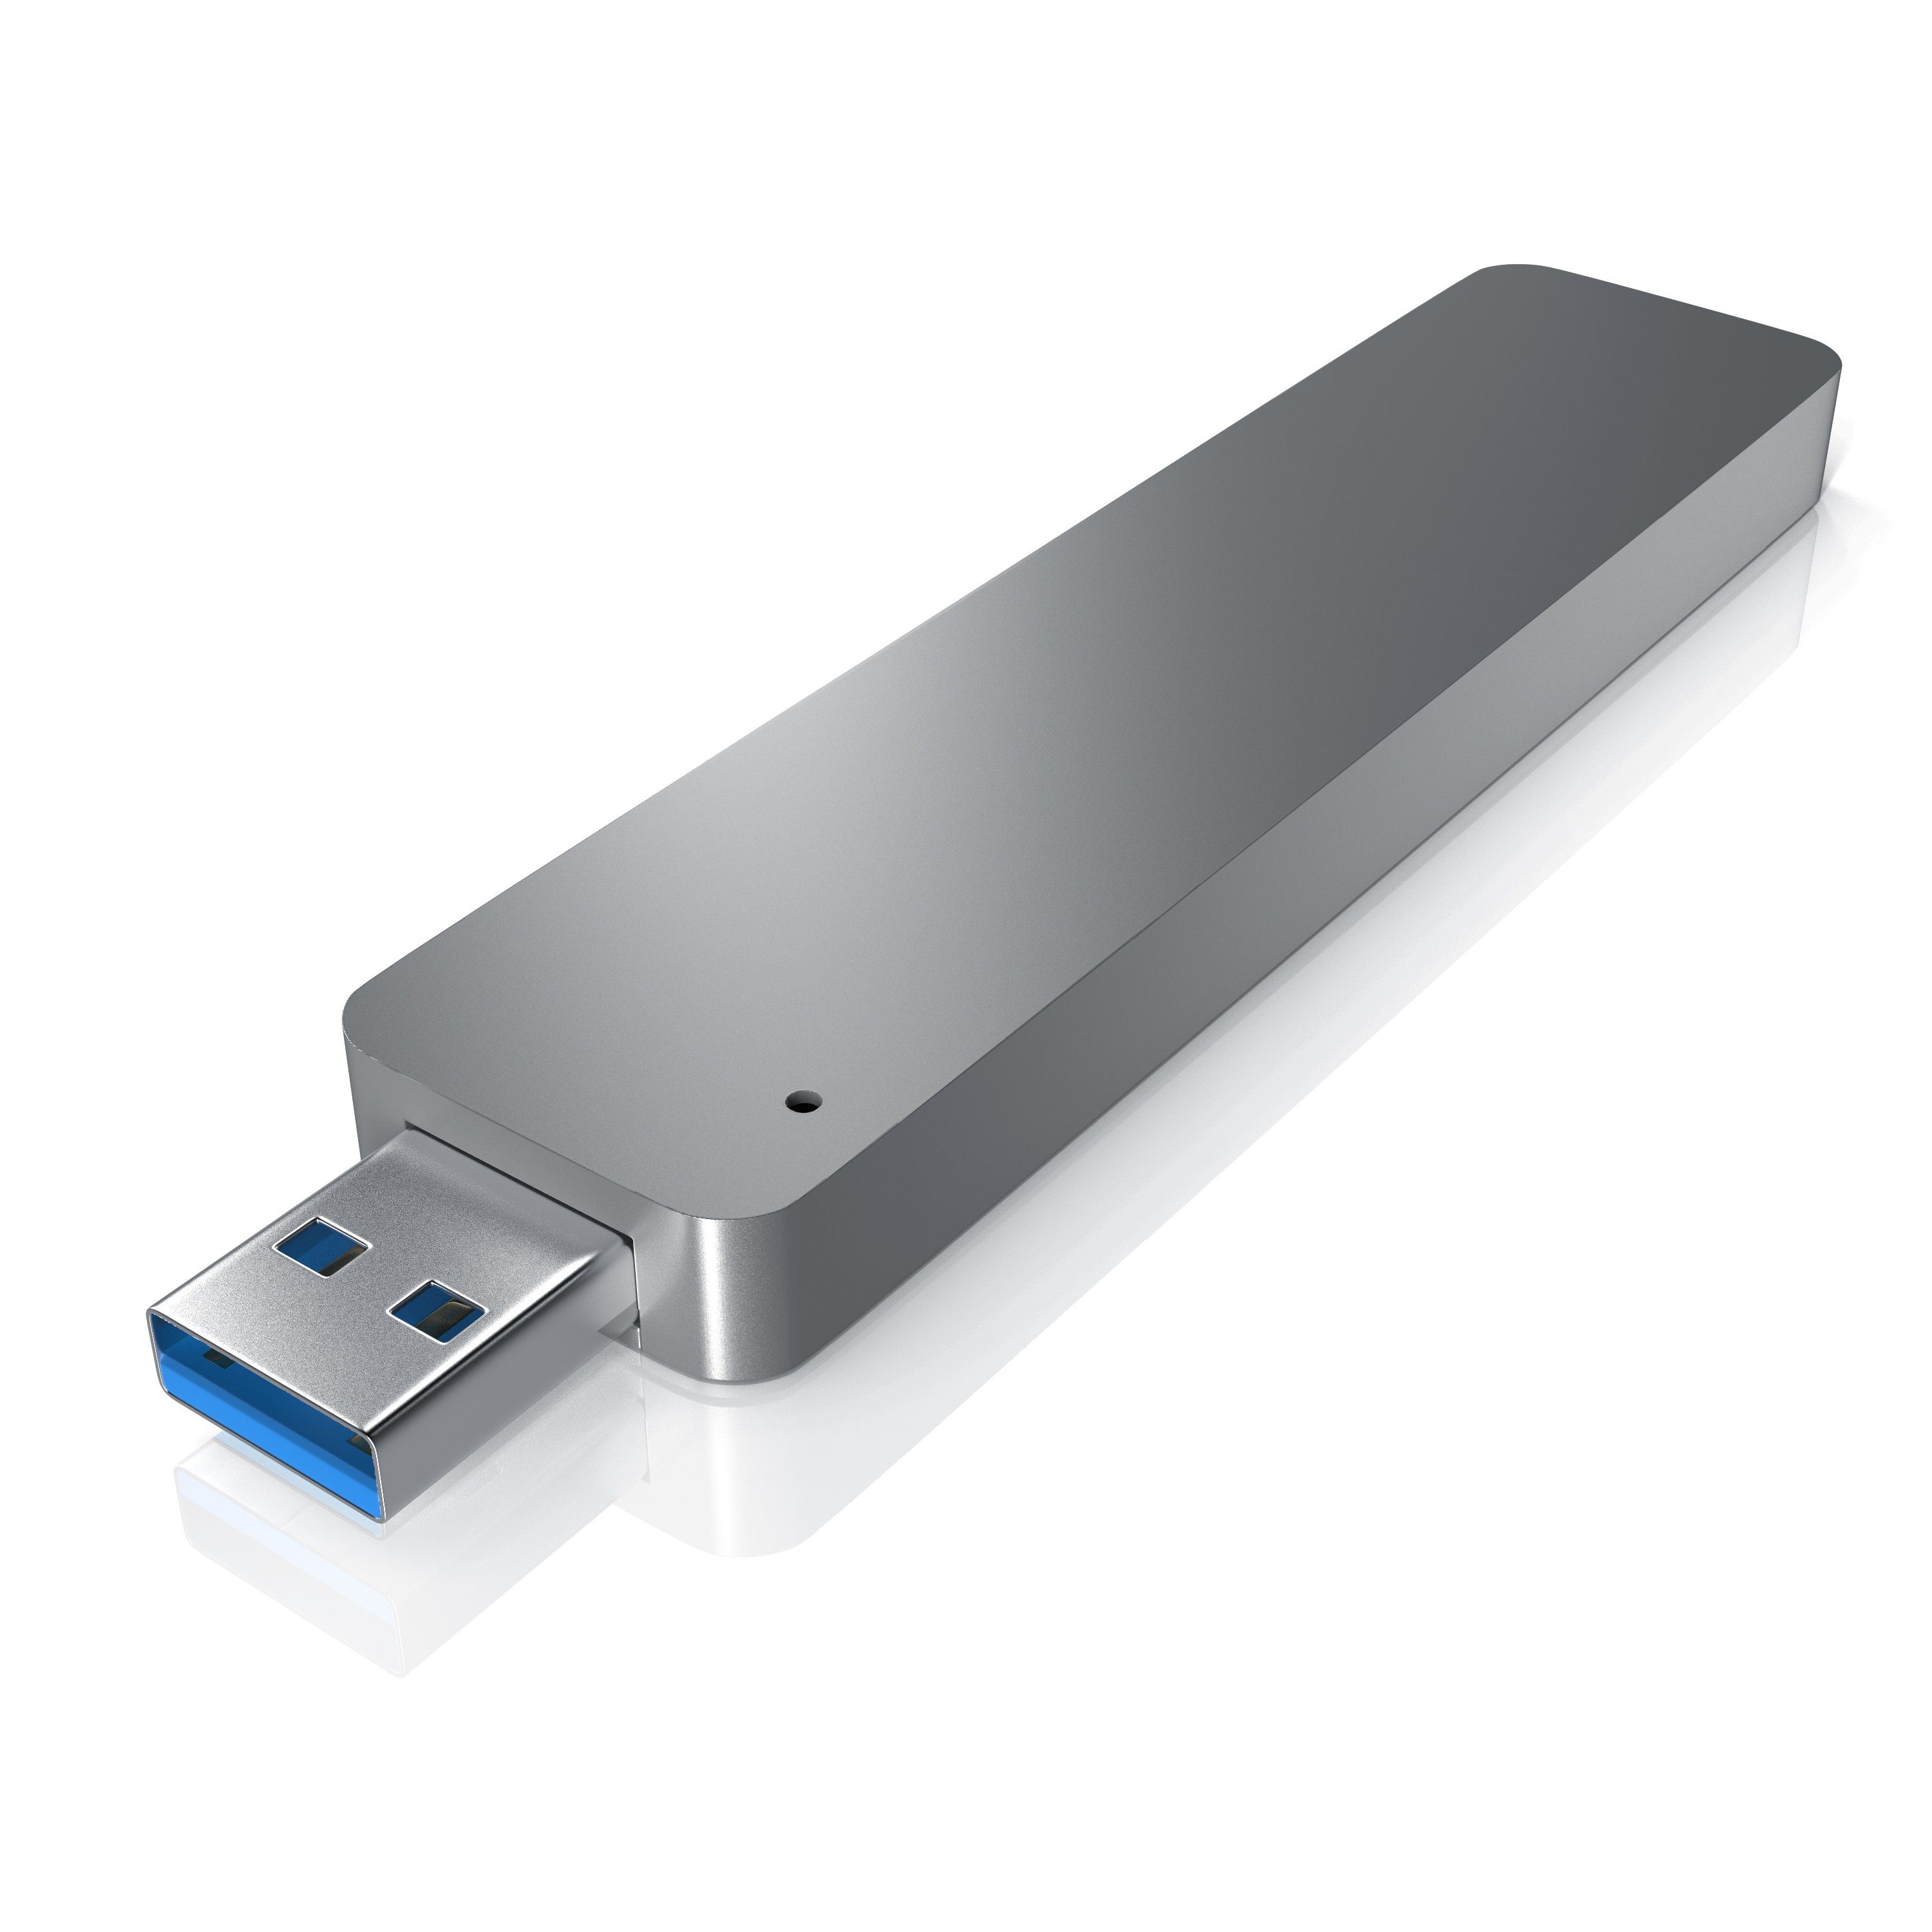 Aplic Festplatten-Gehäuse, USB 3.0 SSD Festplattengehäuse für M.2  Festplatten Module: 2230 / 2242 / 2260 / 2280 online kaufen | OTTO